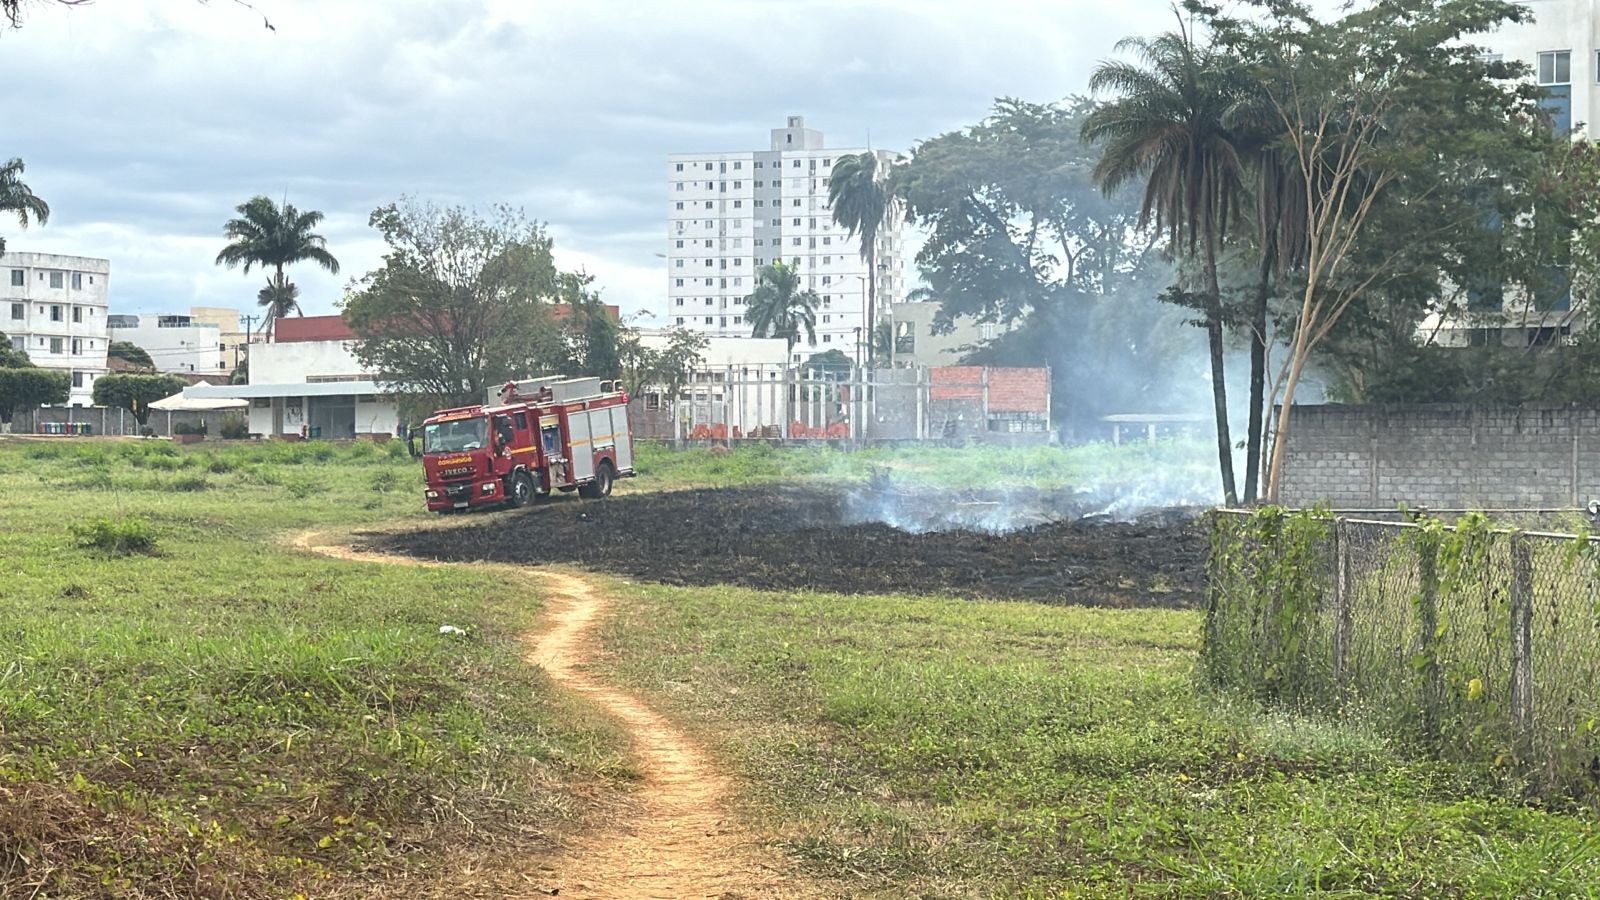 Polícia Civil vai investigar incêndio em universidade de Montes Claros